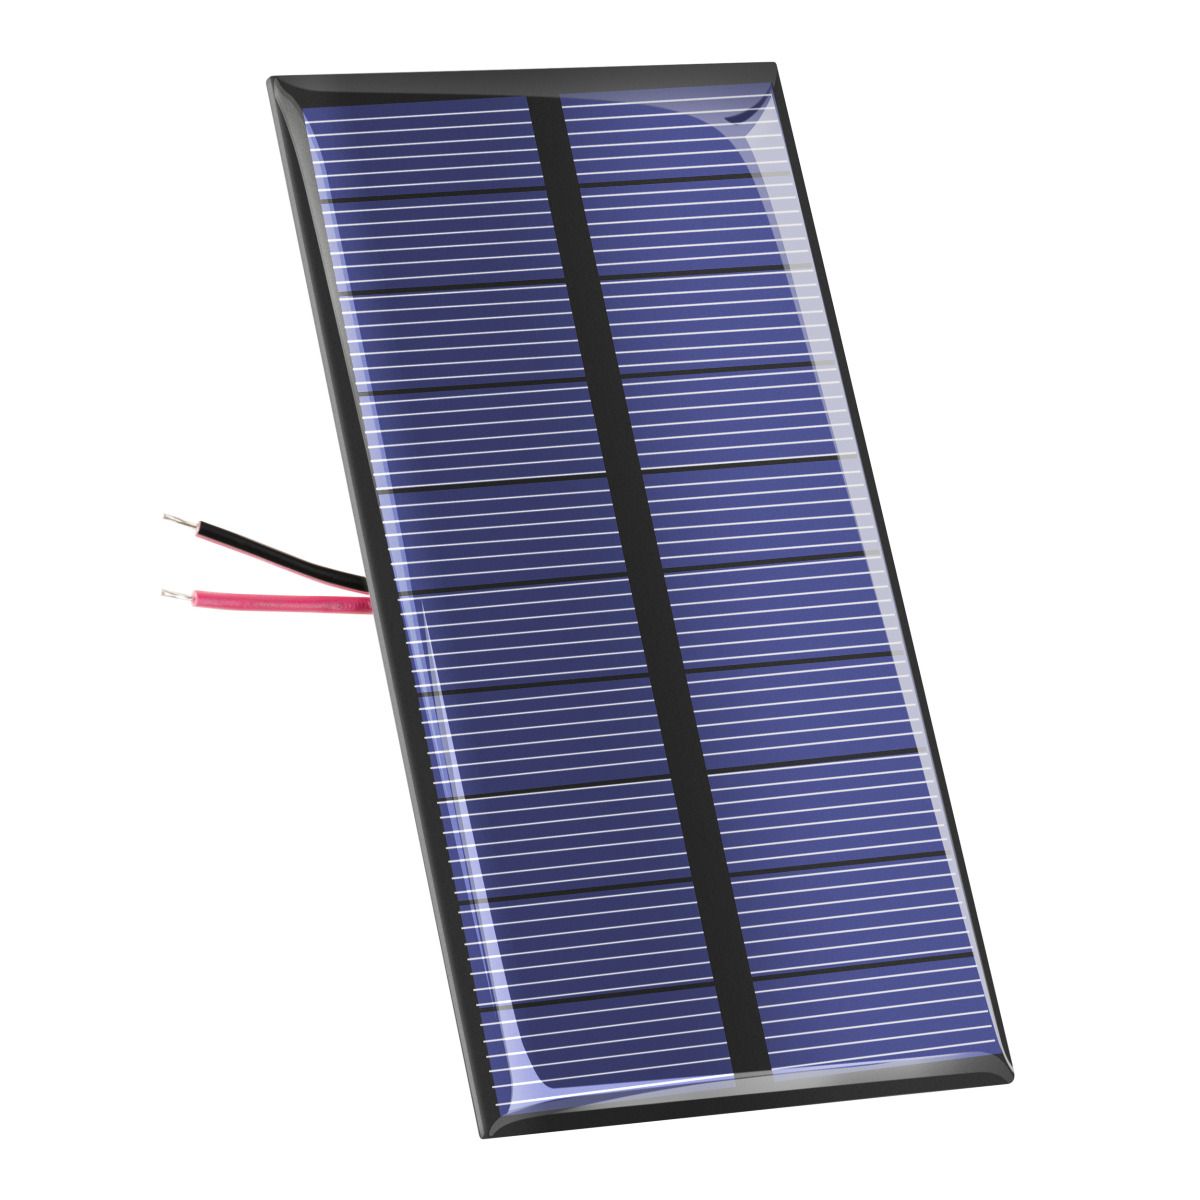 En este enchufe solar para ventanas, los minipaneles solares